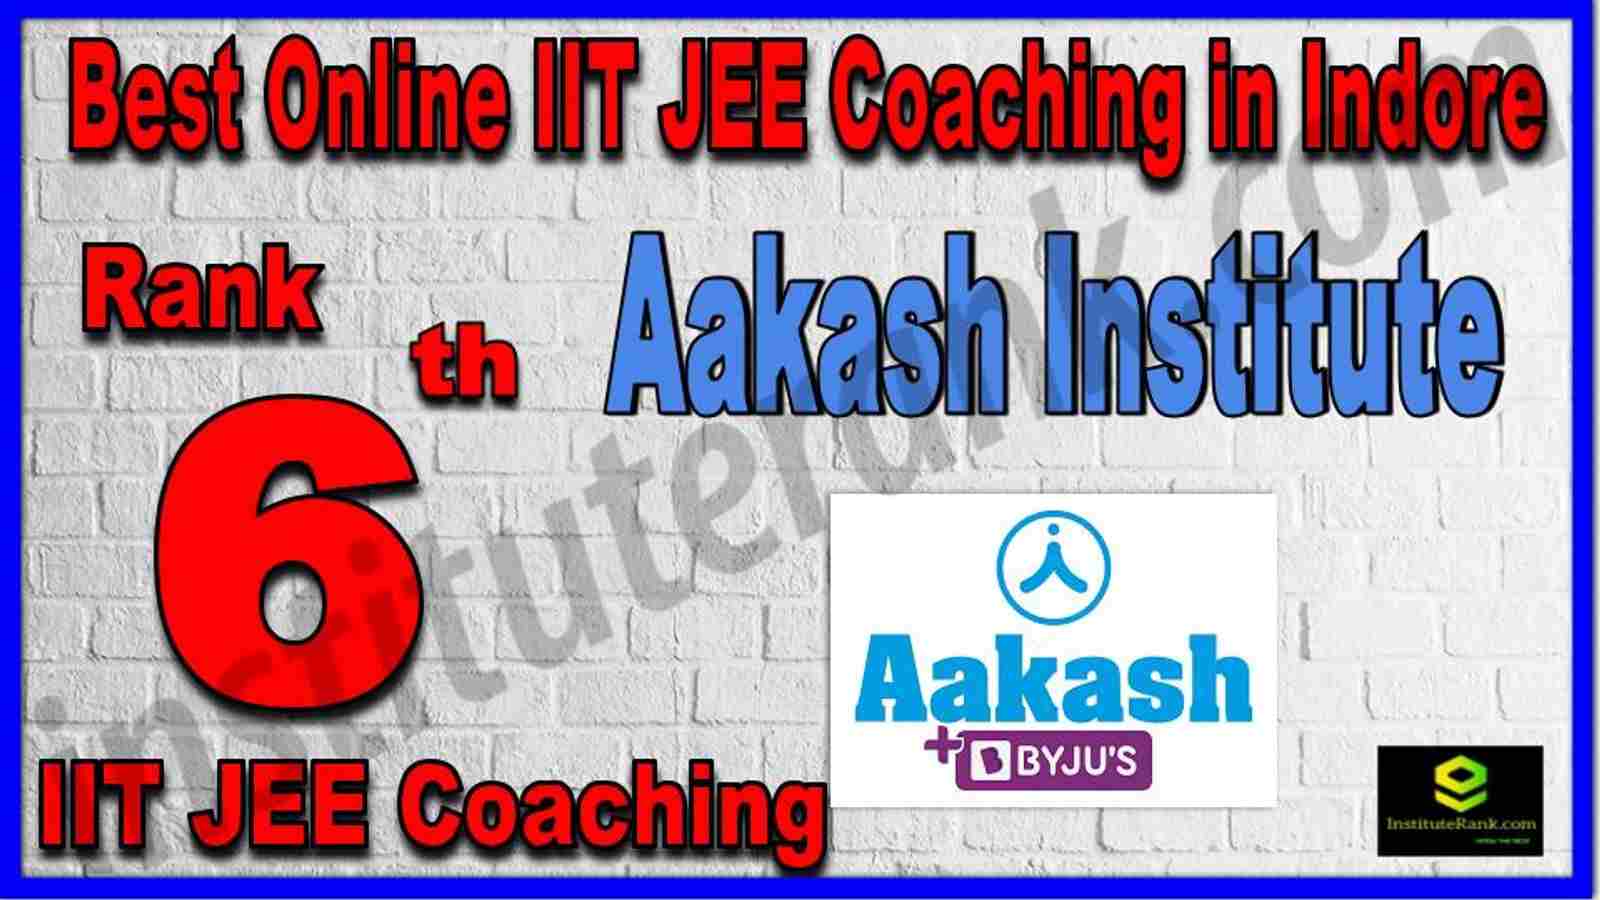 Rank 6th Best Online IIT JEE Coaching in Indore